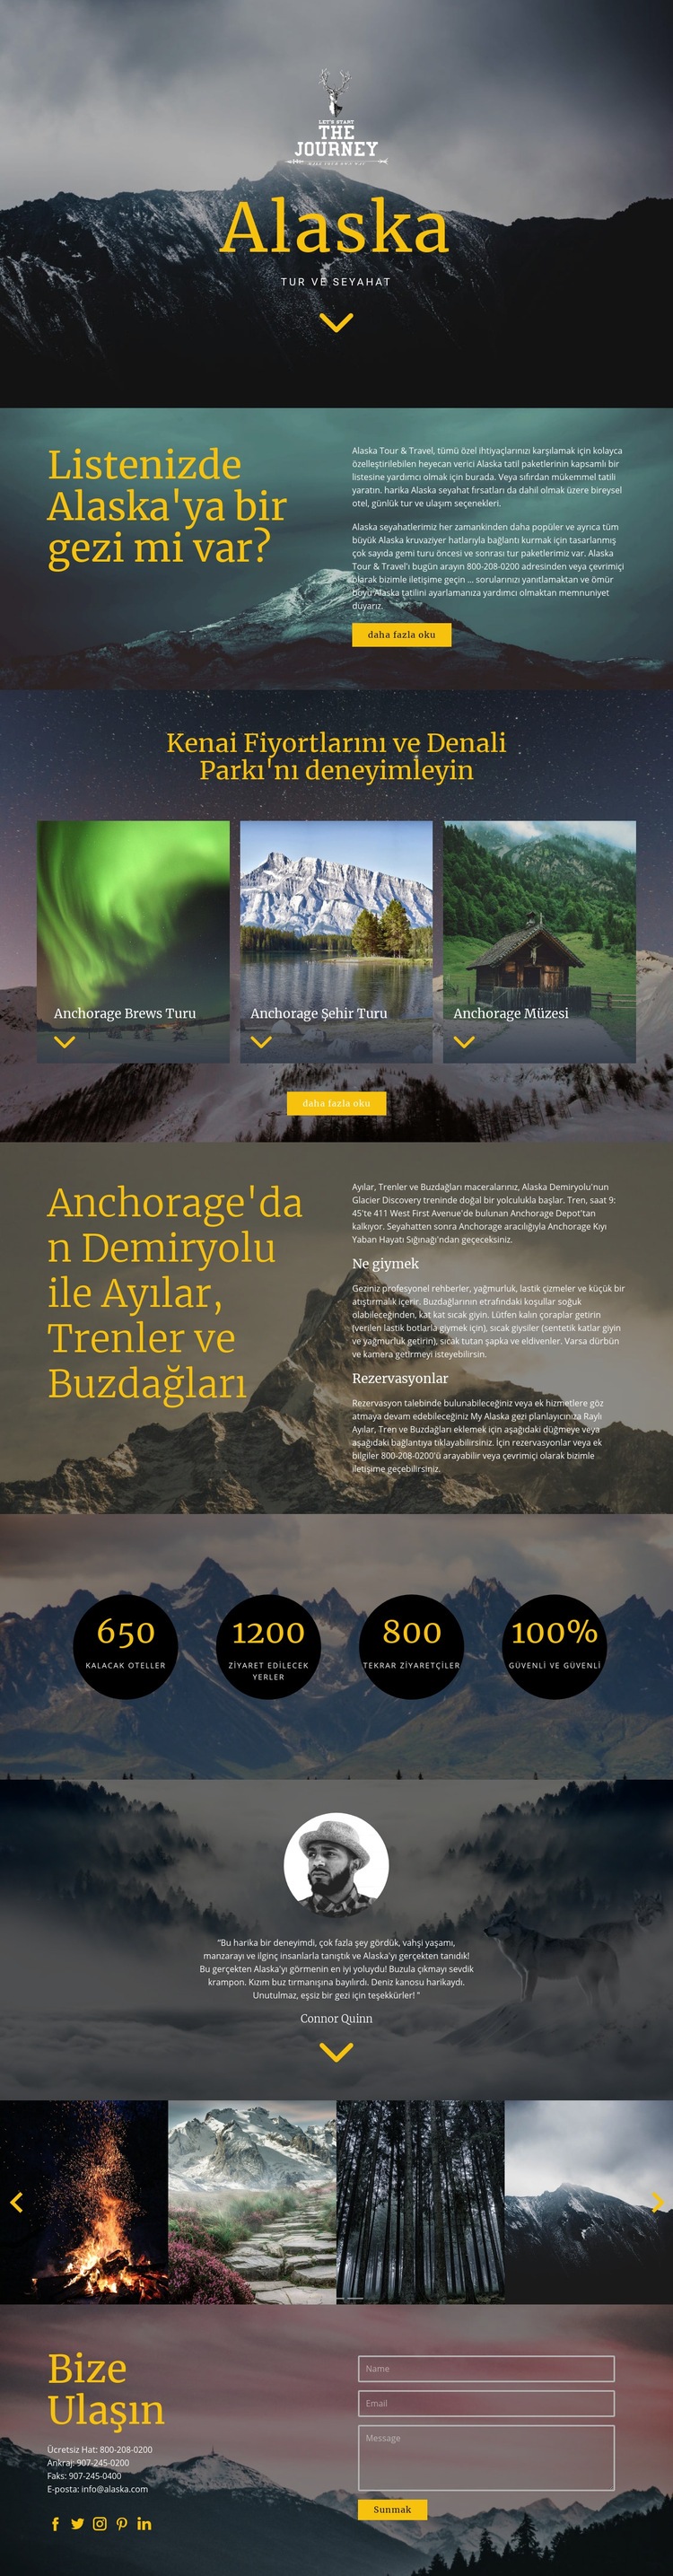 Alaska Seyahati Web sitesi tasarımı